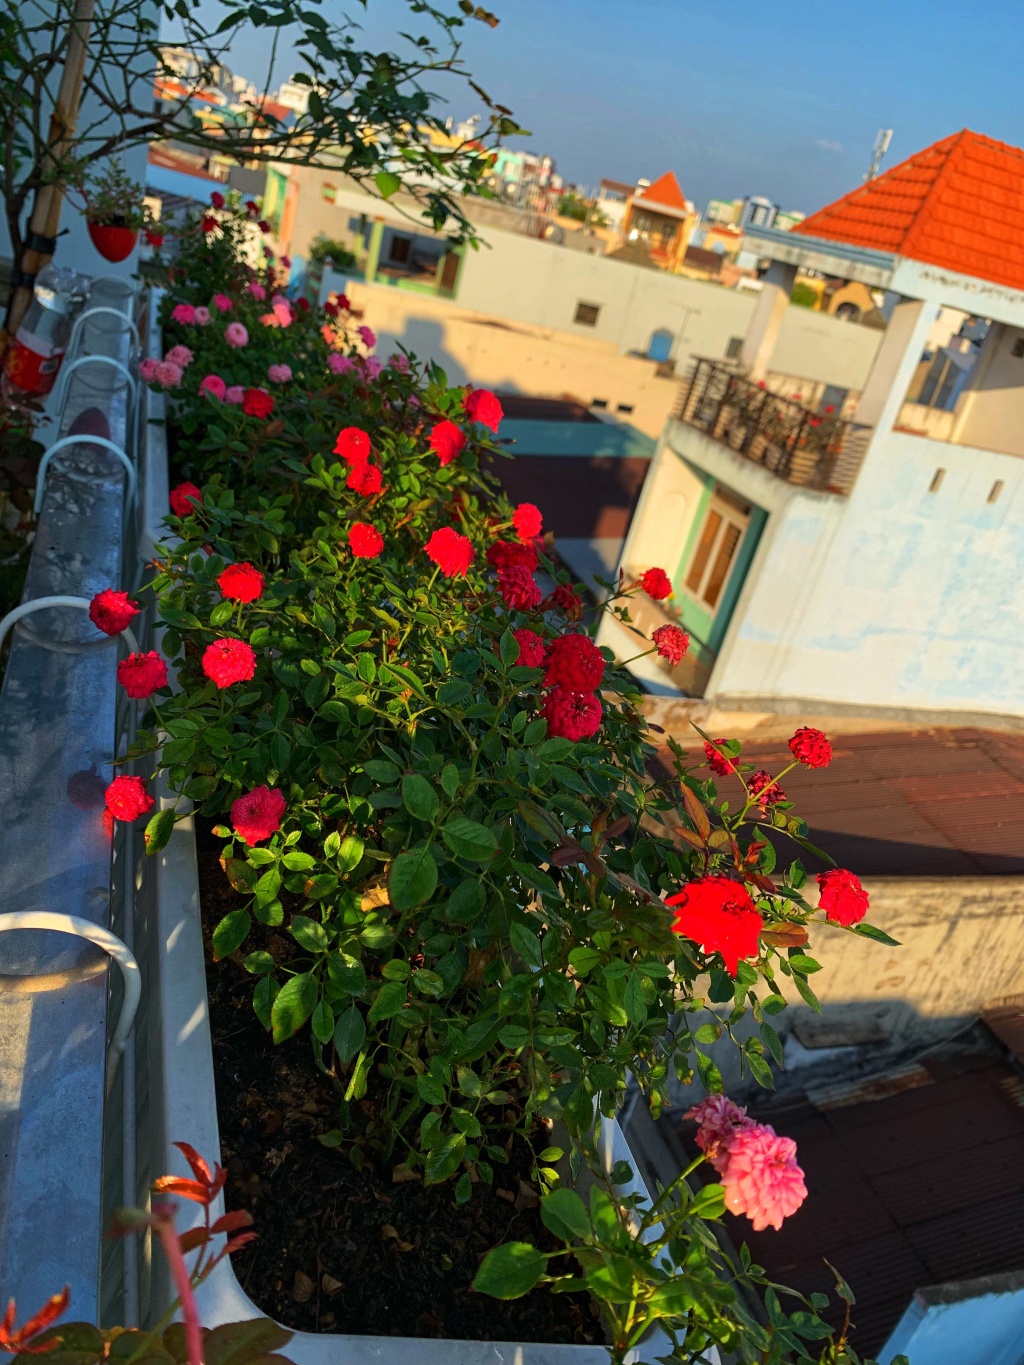 Hoa hồng là loại hoa được yêu thích nhất và được trồng nhiều nhất trên ban công. Hãy ngắm nhìn những bông hoa hồng đầy lãng mạn và phát triển mạnh mẽ trên không gian sống của bạn.